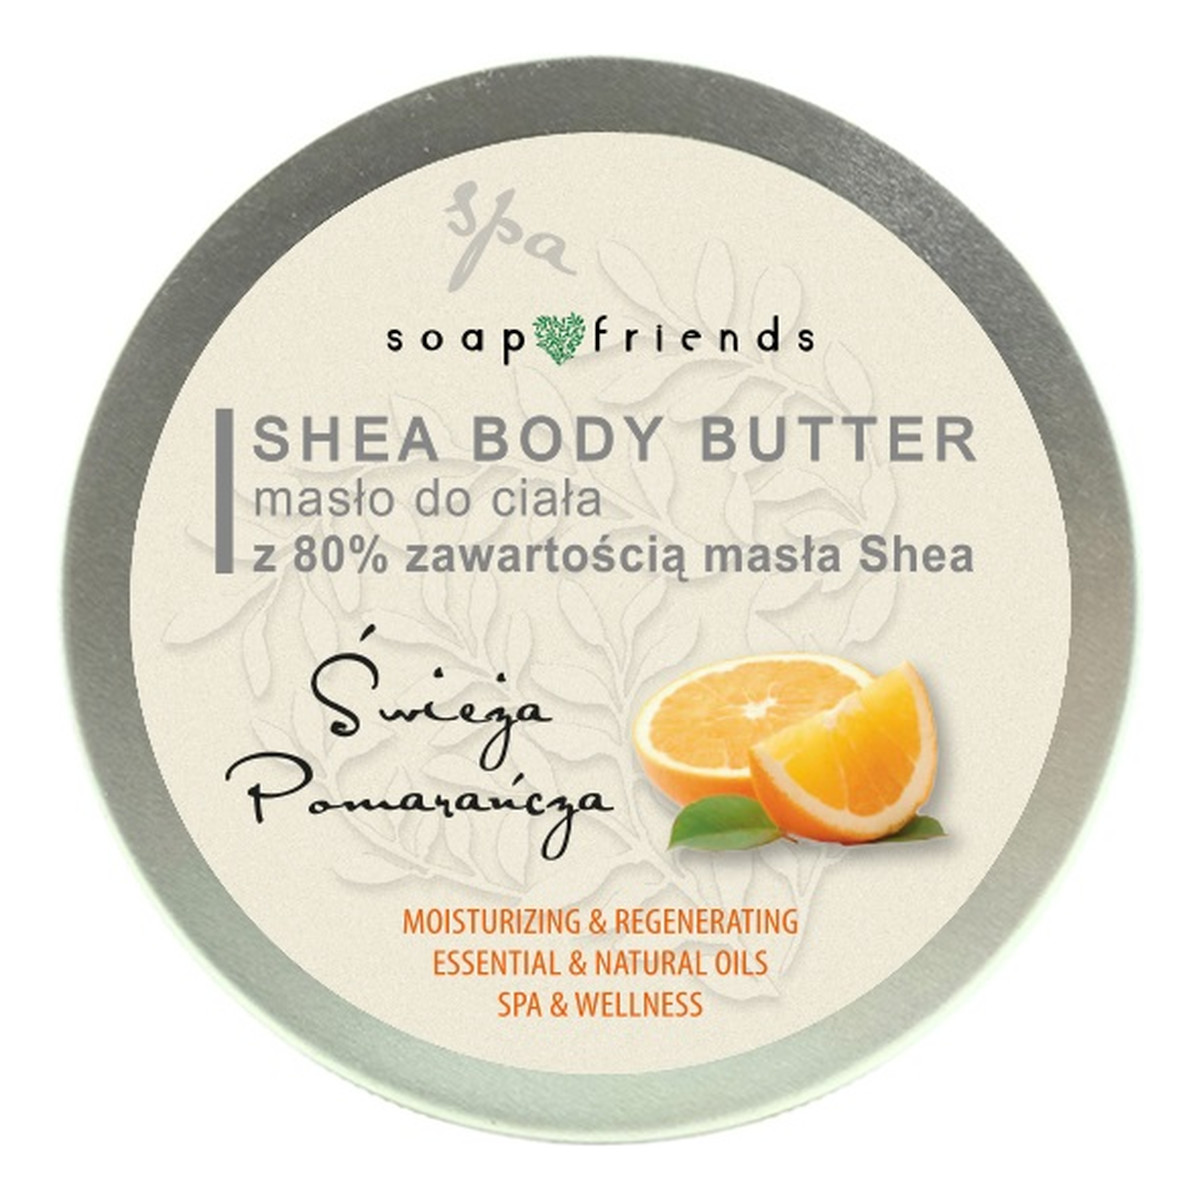 The Secret Soap Store Shea butter 80% masło do ciała pomarańcza 200ml